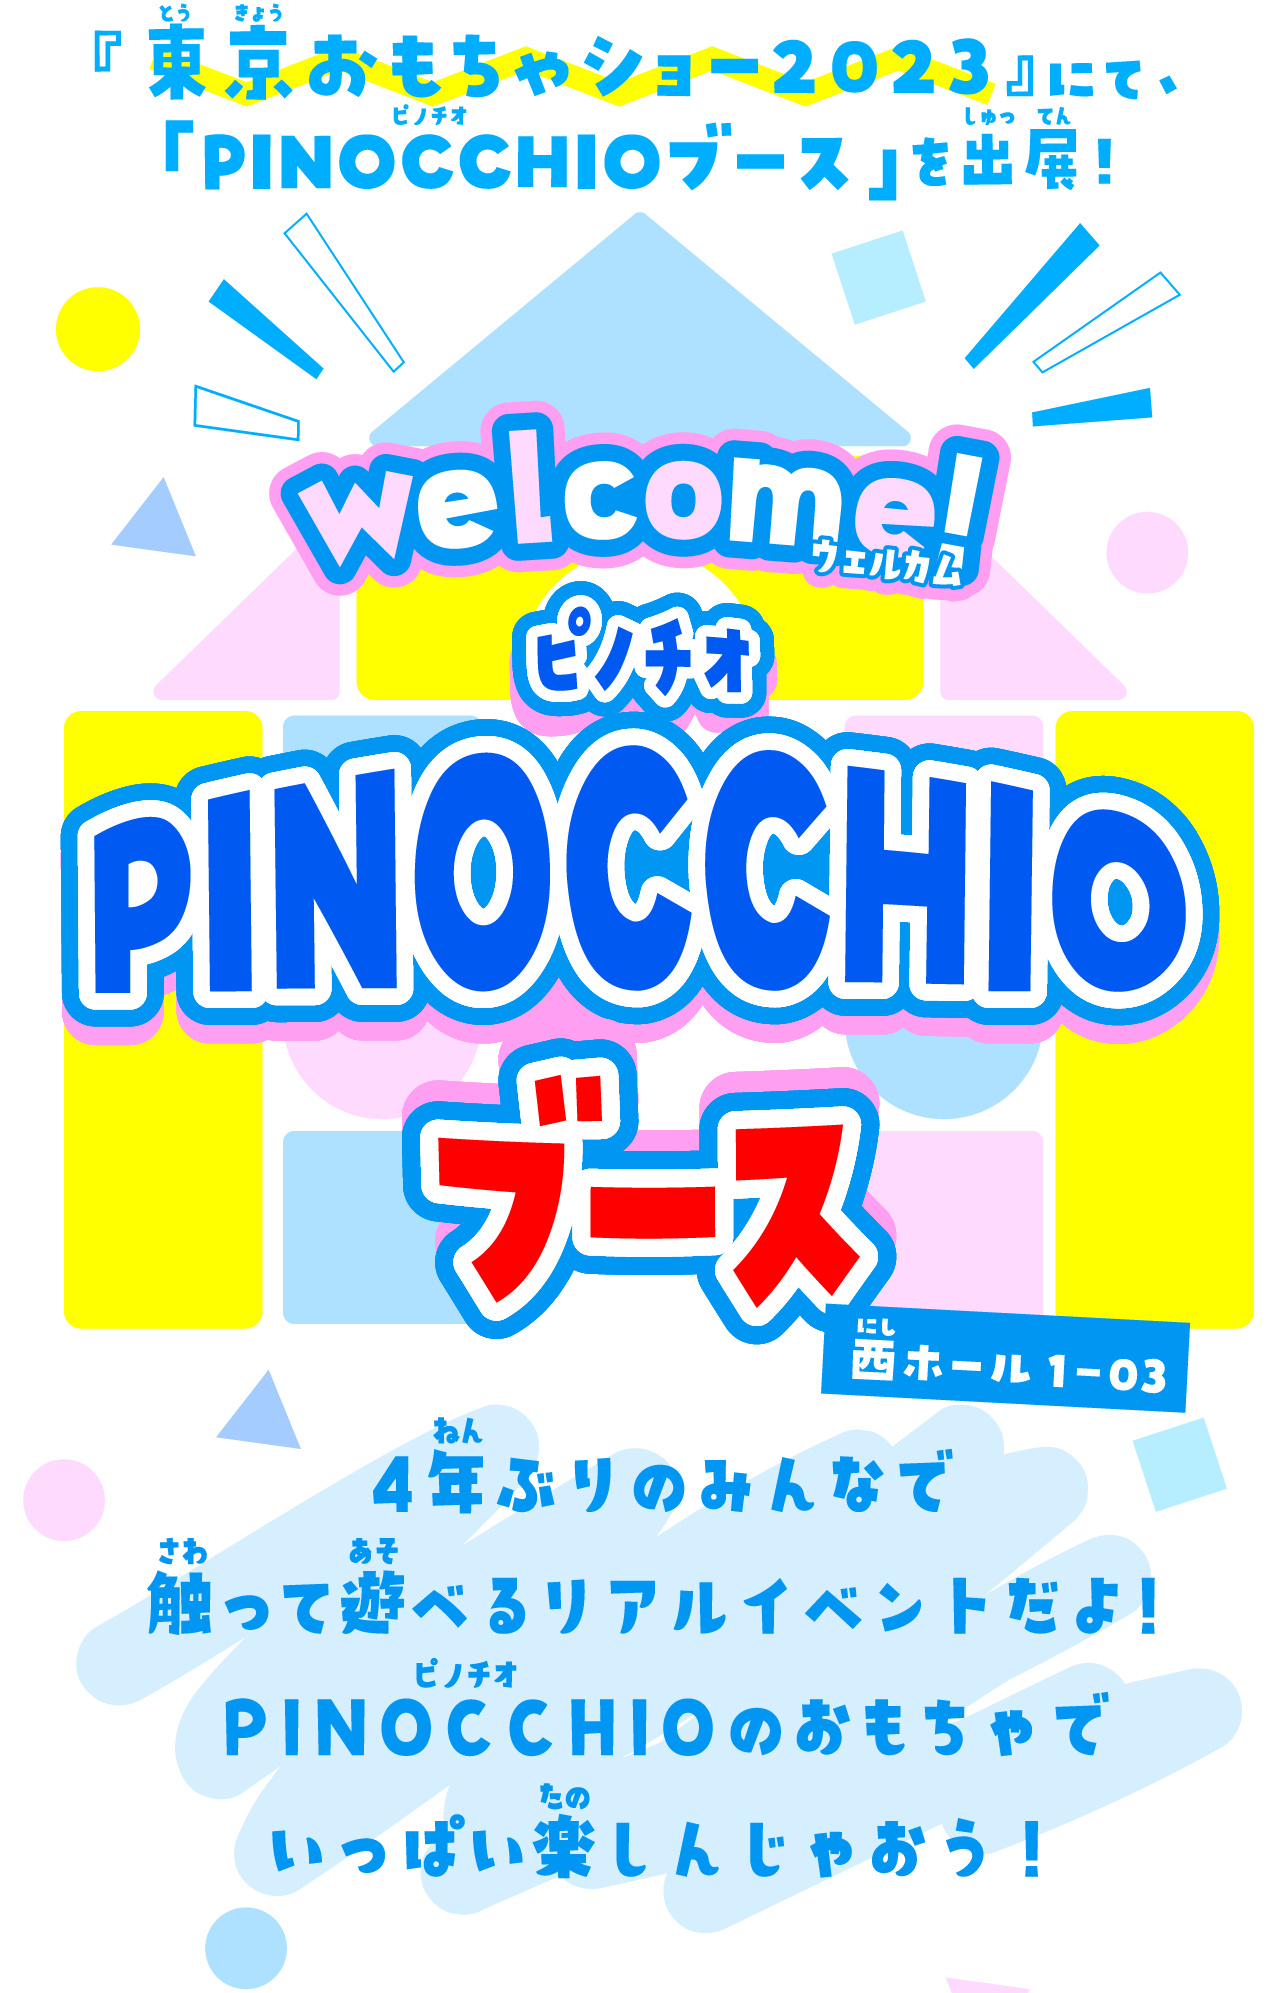 『東京おもちゃショー2023』にて、「PINOCCHIOブース」を出展！Welcom！ピノチオブース